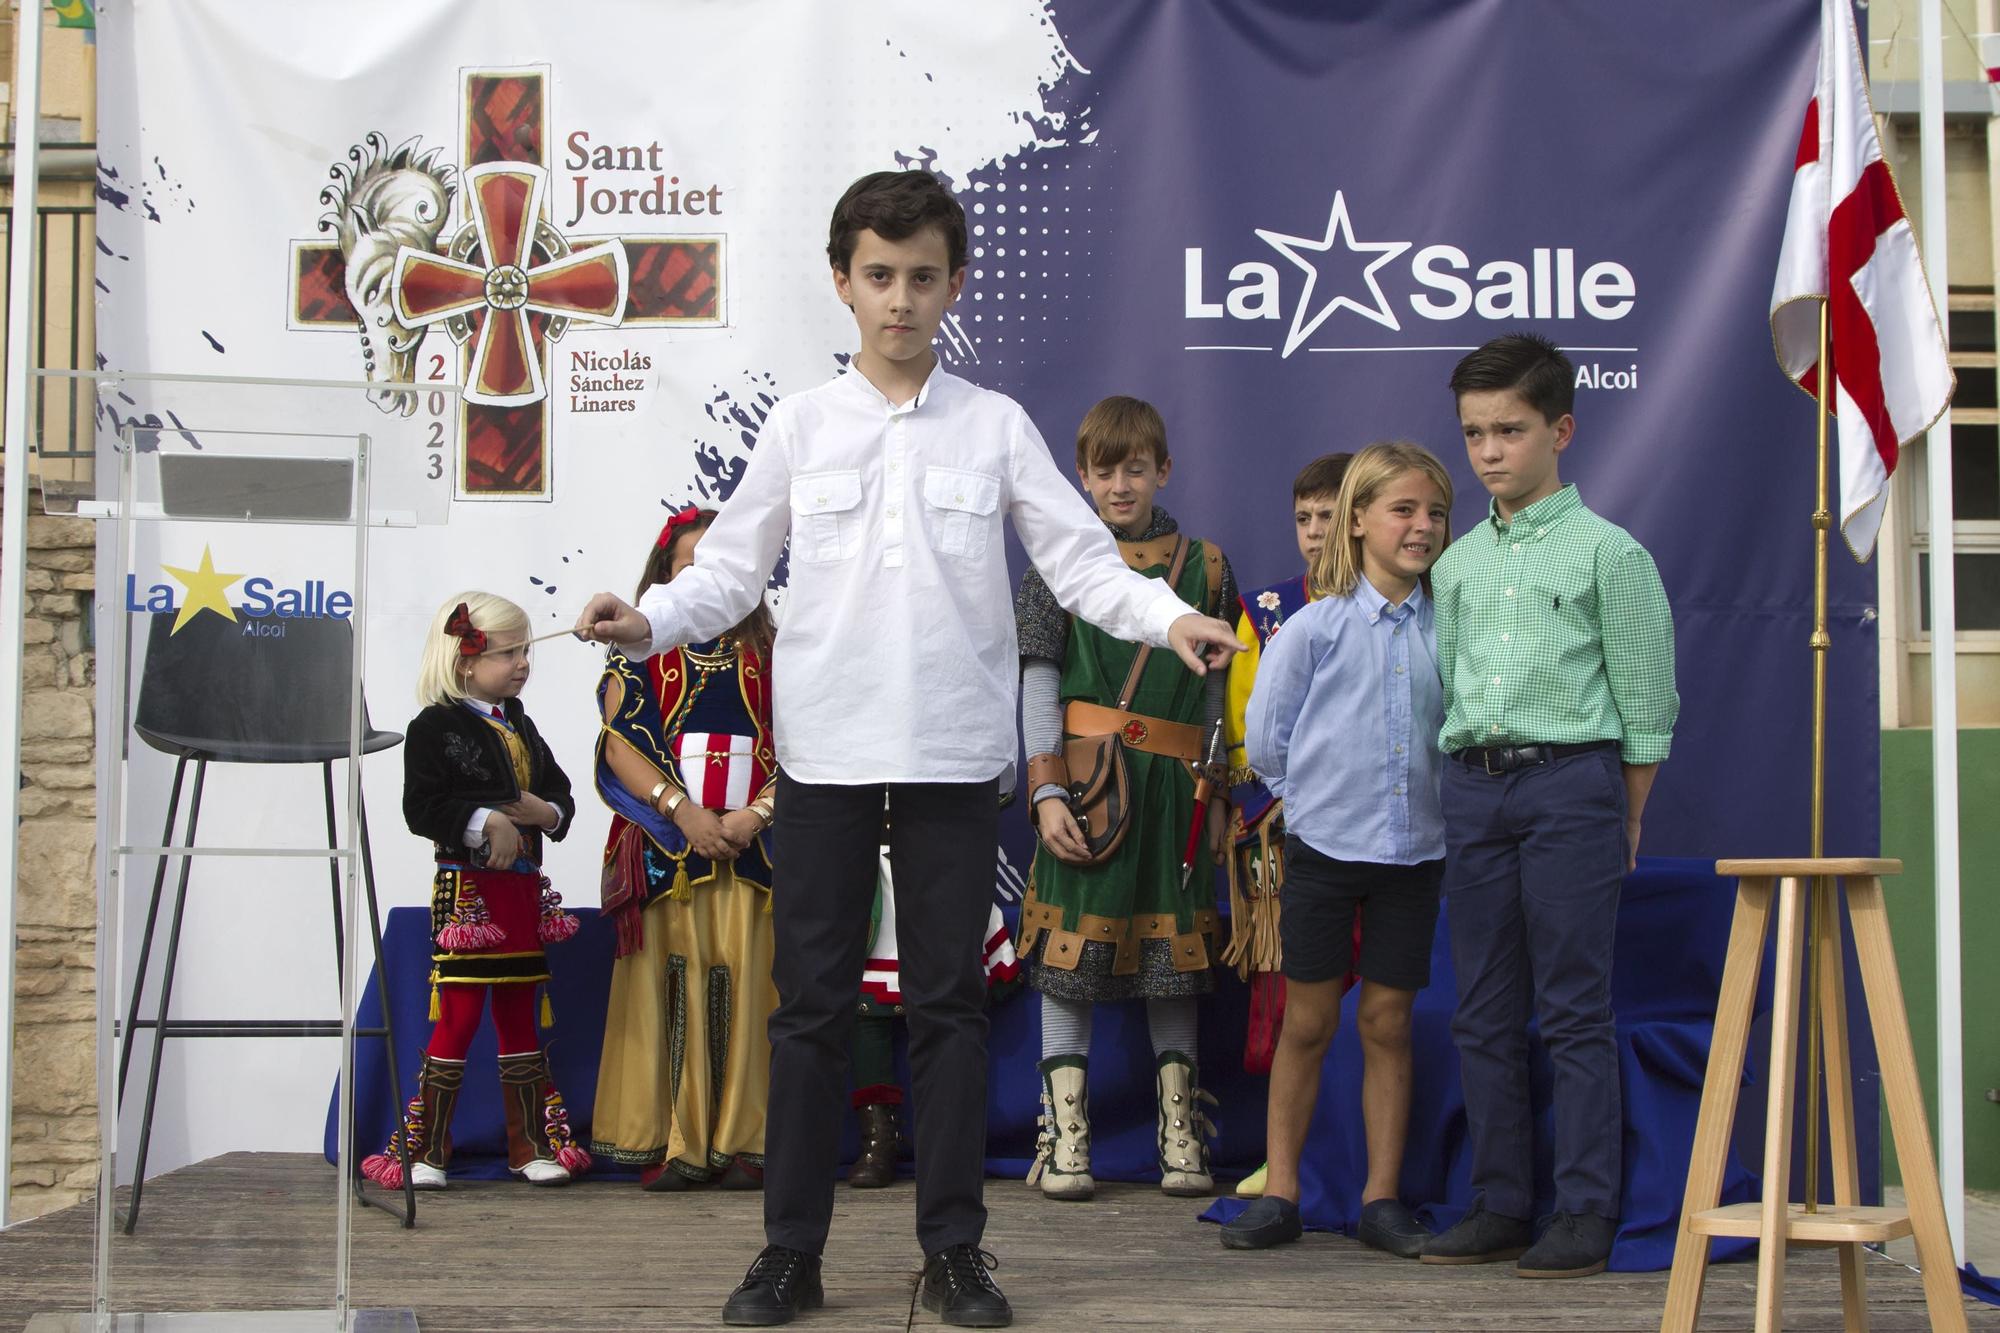 Imágenes de Nicolás Sánchez Linares tomando el testigo como Sant Jordiet en Alcoy